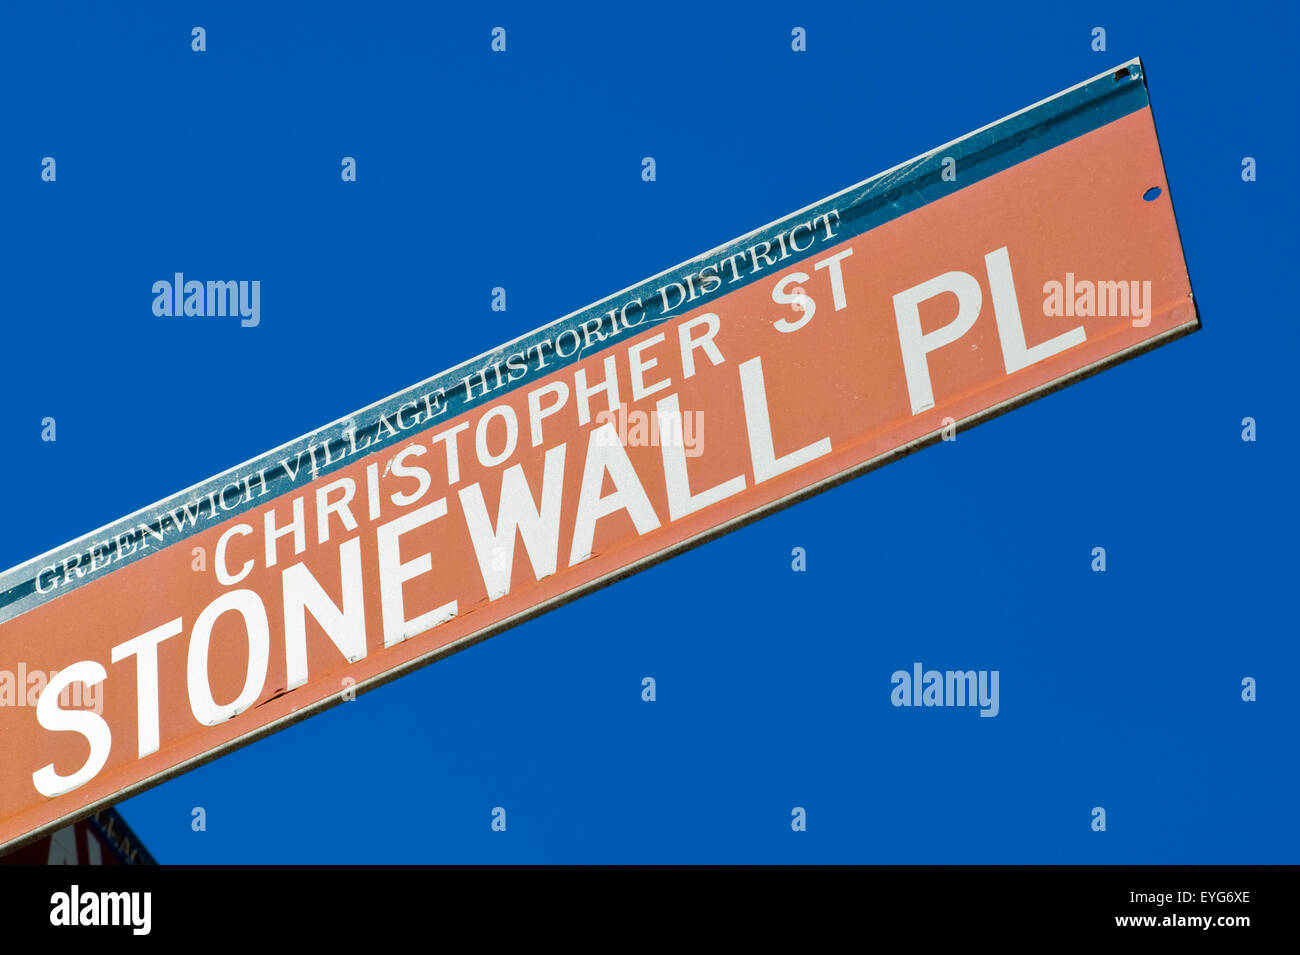 Stonewall Ort Stree Zeichen, West Village, Manhattan, New York, Usa Stockfoto